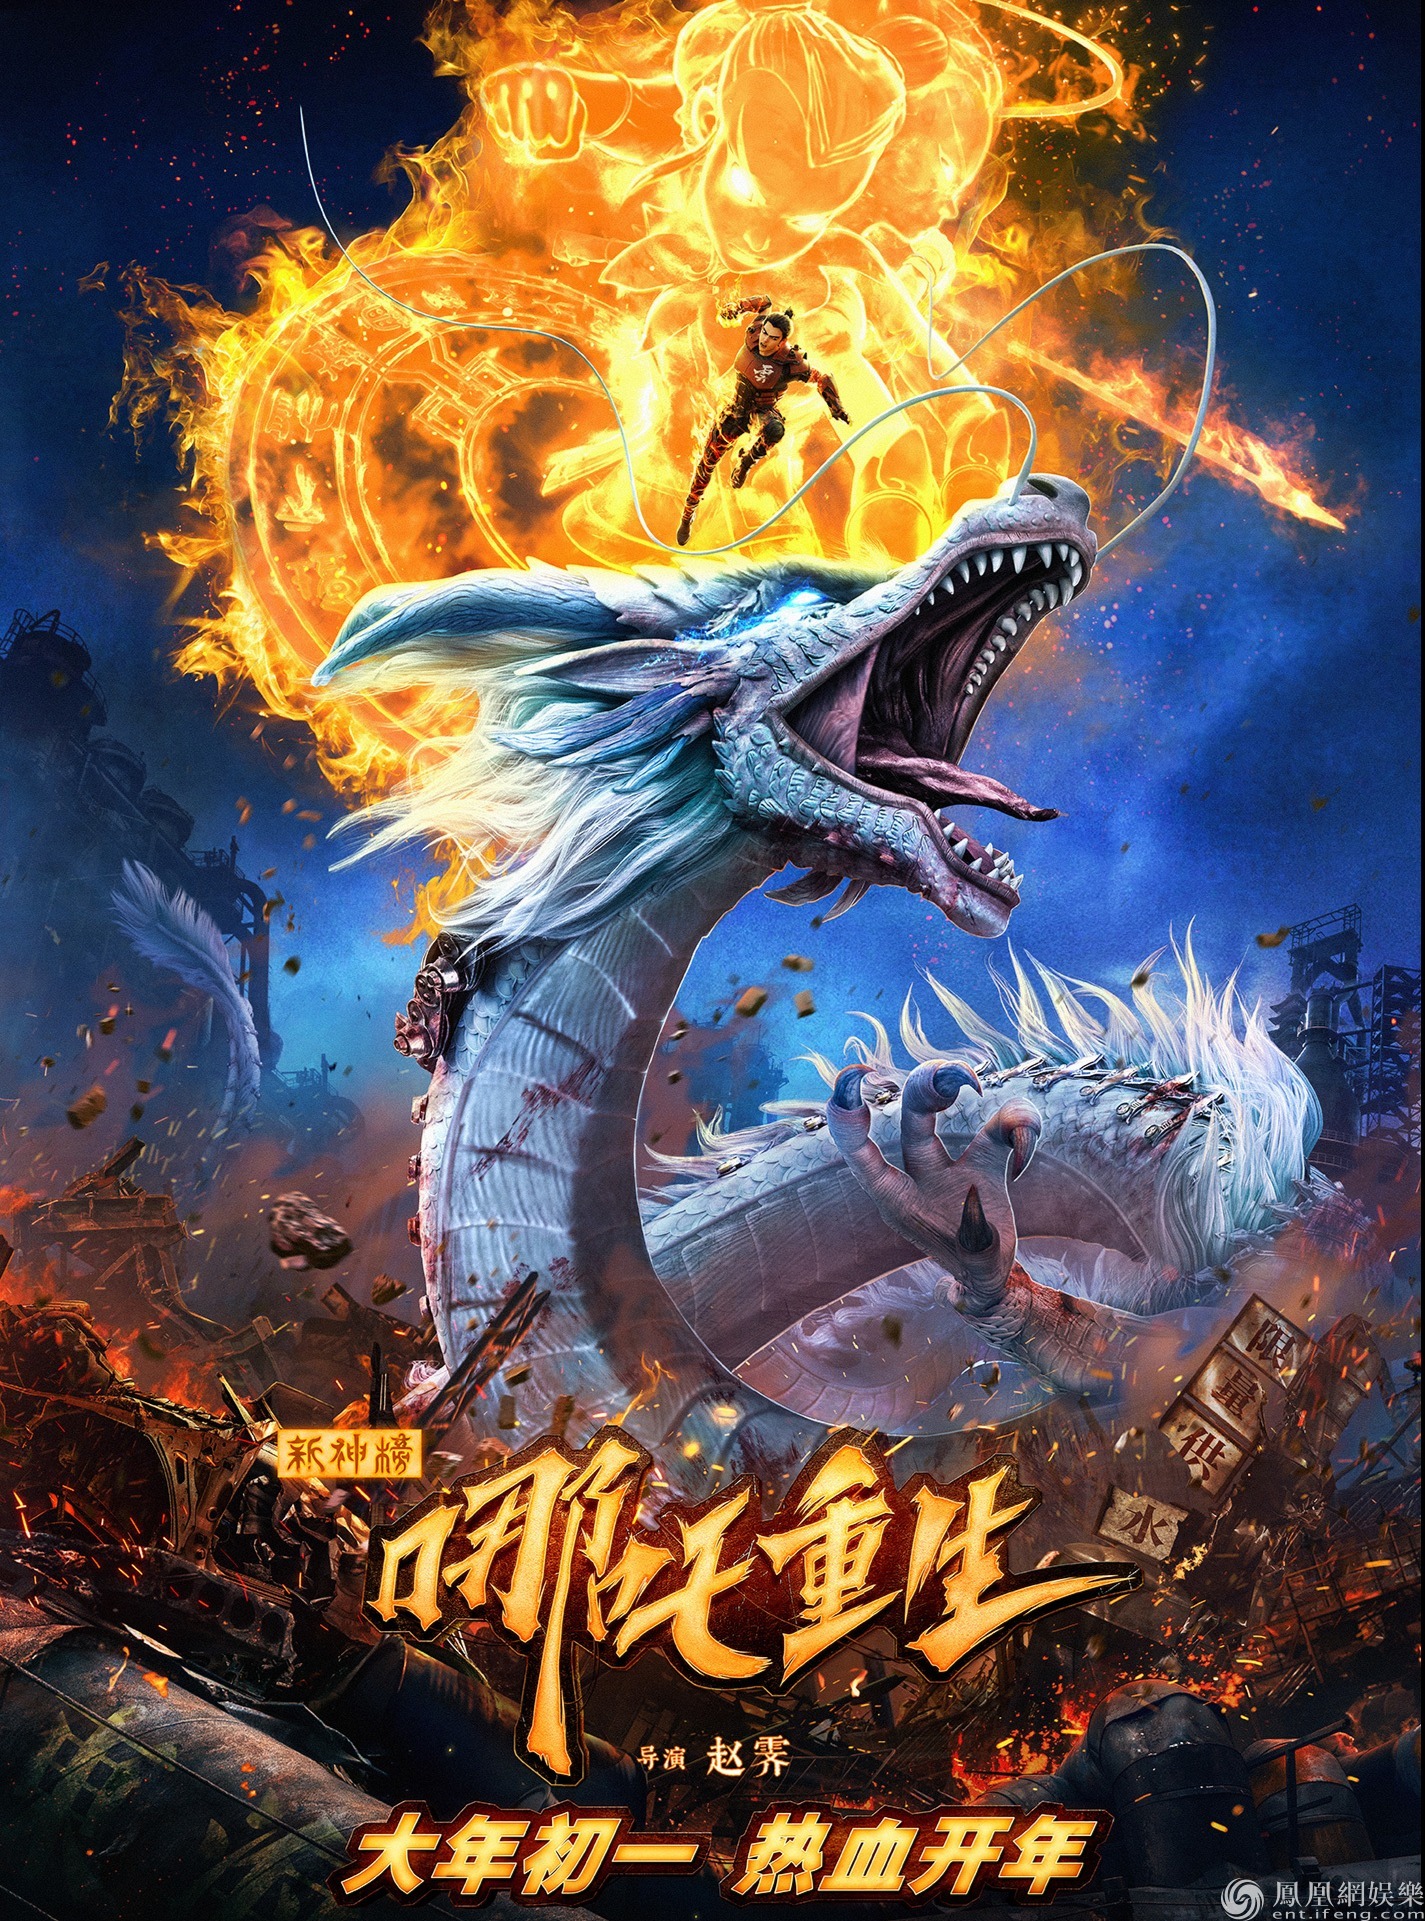 海报国产动画电影《新神榜:哪吒重生》正式宣布定档2021年大年初一